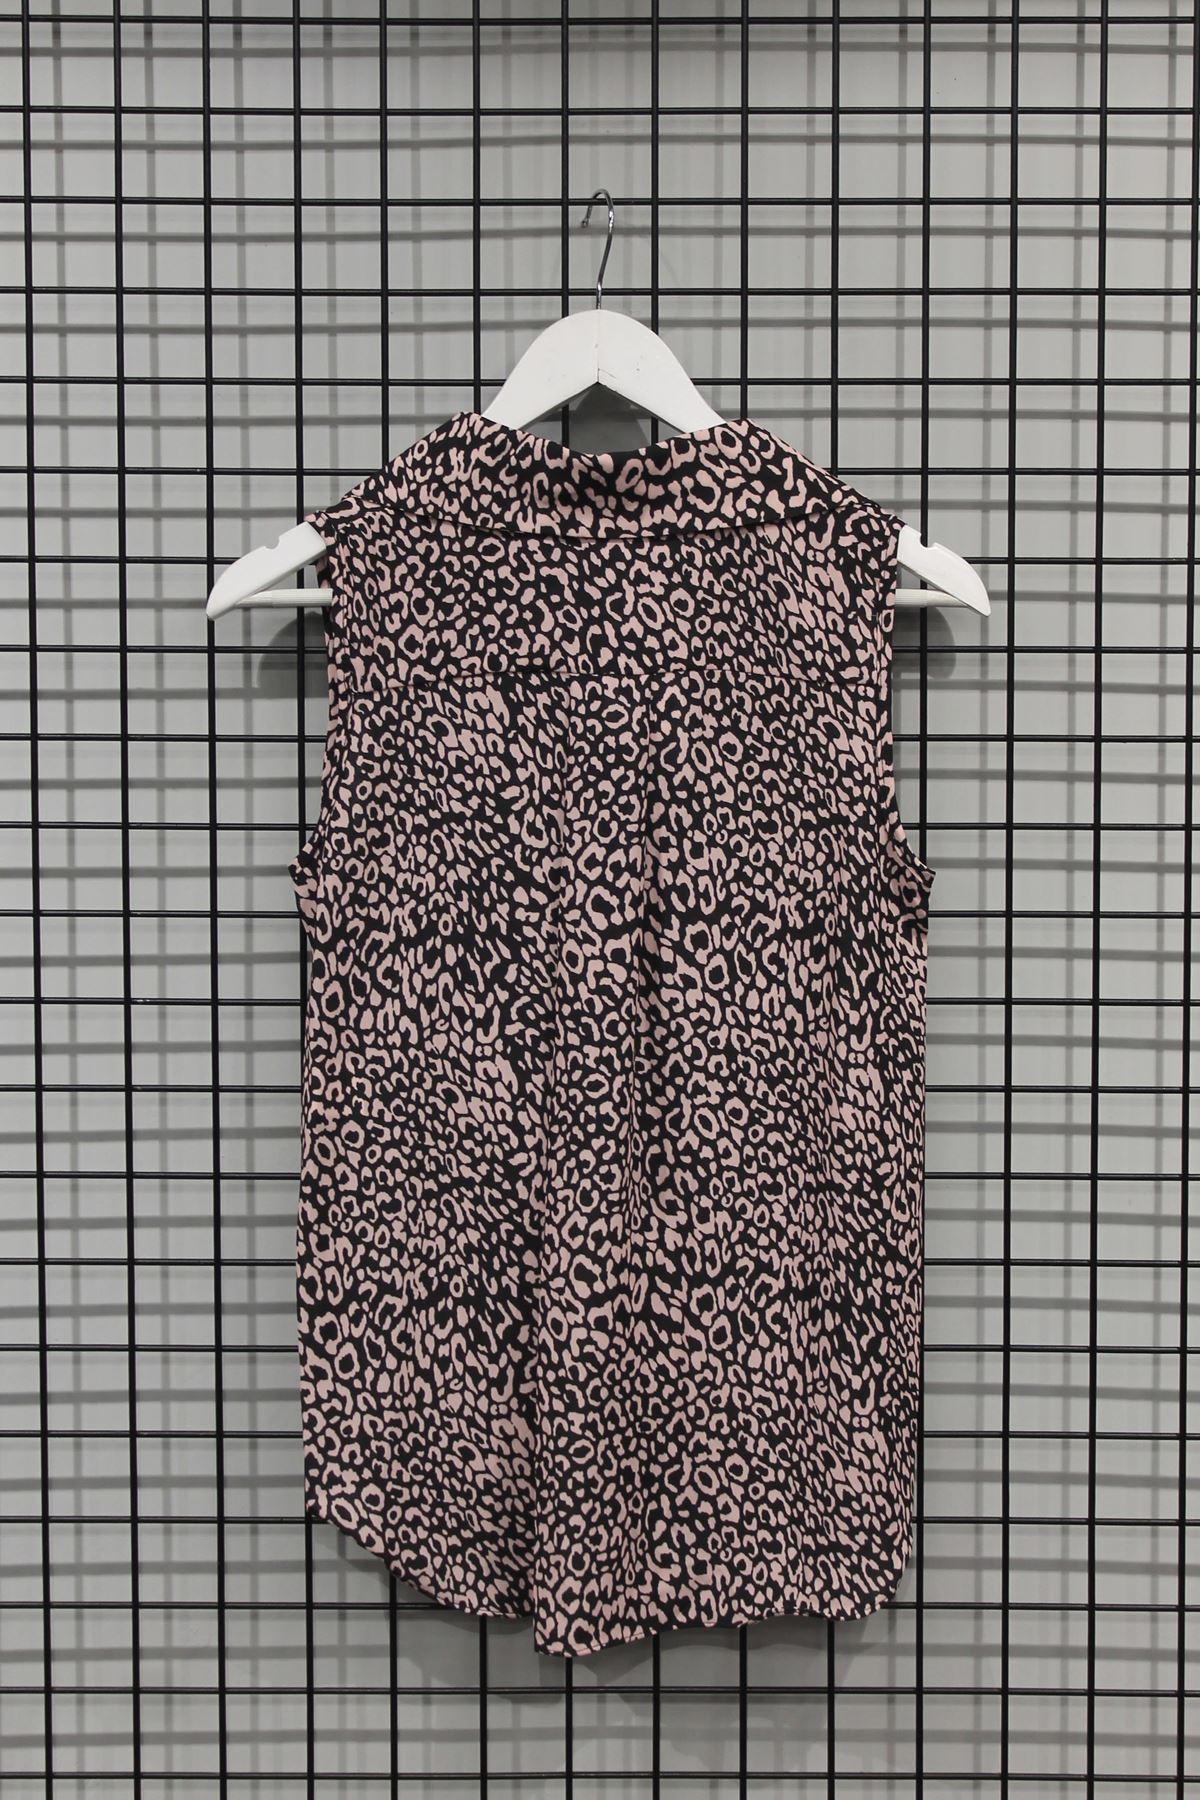 Jessica Fabric Sleeveless Shirt Collar Auger Leopard Print Blouse - Light Pink